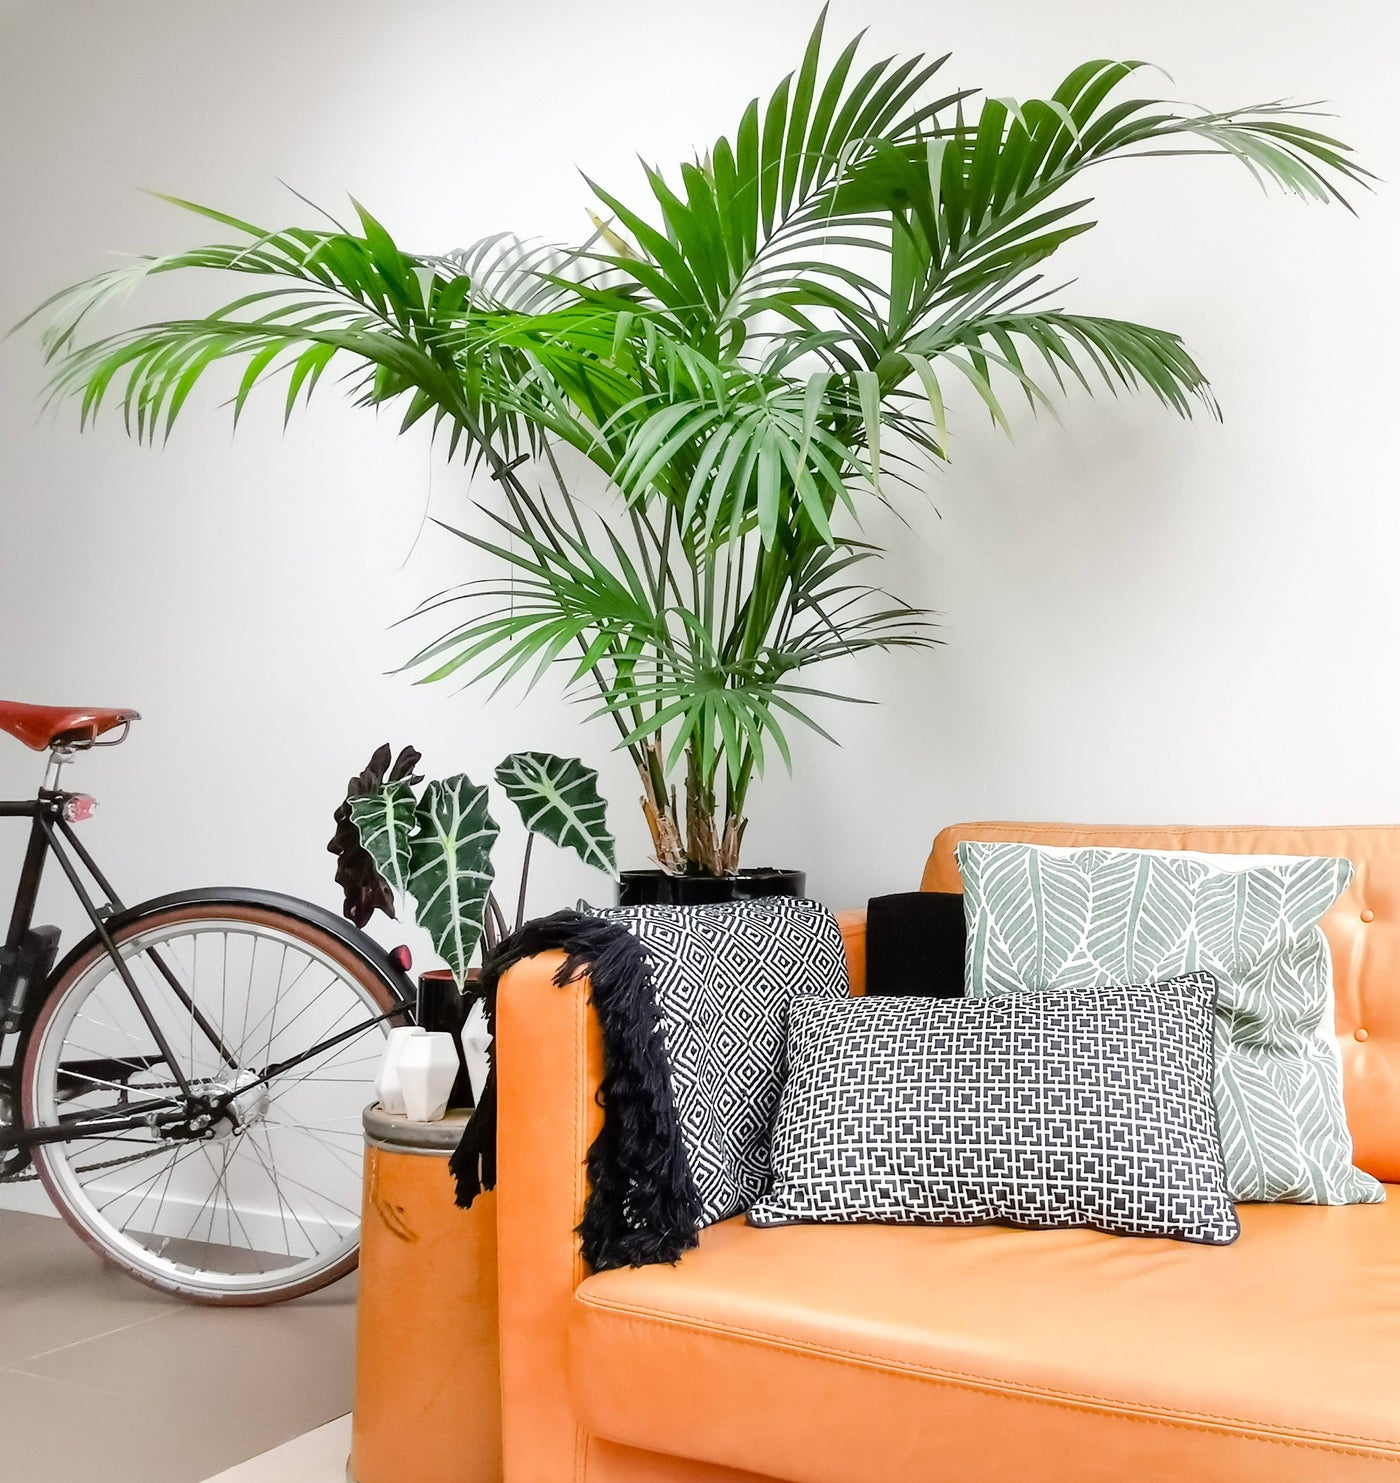 Kentiapalme (Howea Forsteriana) - Nachhaltige Zimmerpflanzen kaufen Botanicly Foto 3